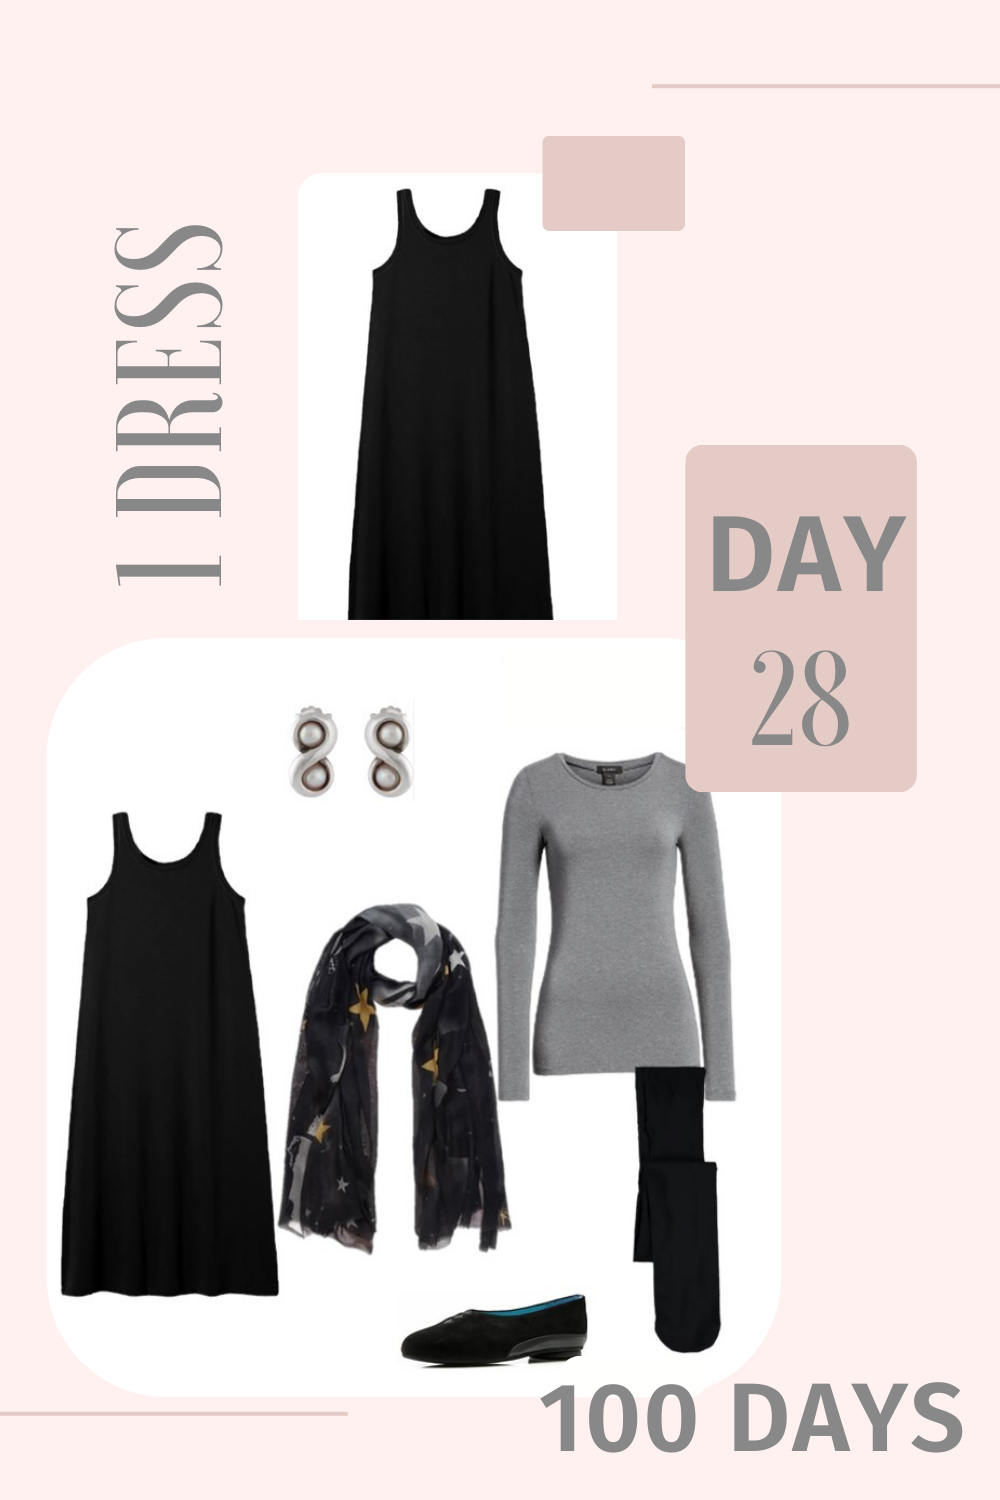 1 Dress 100 Days - Day 28